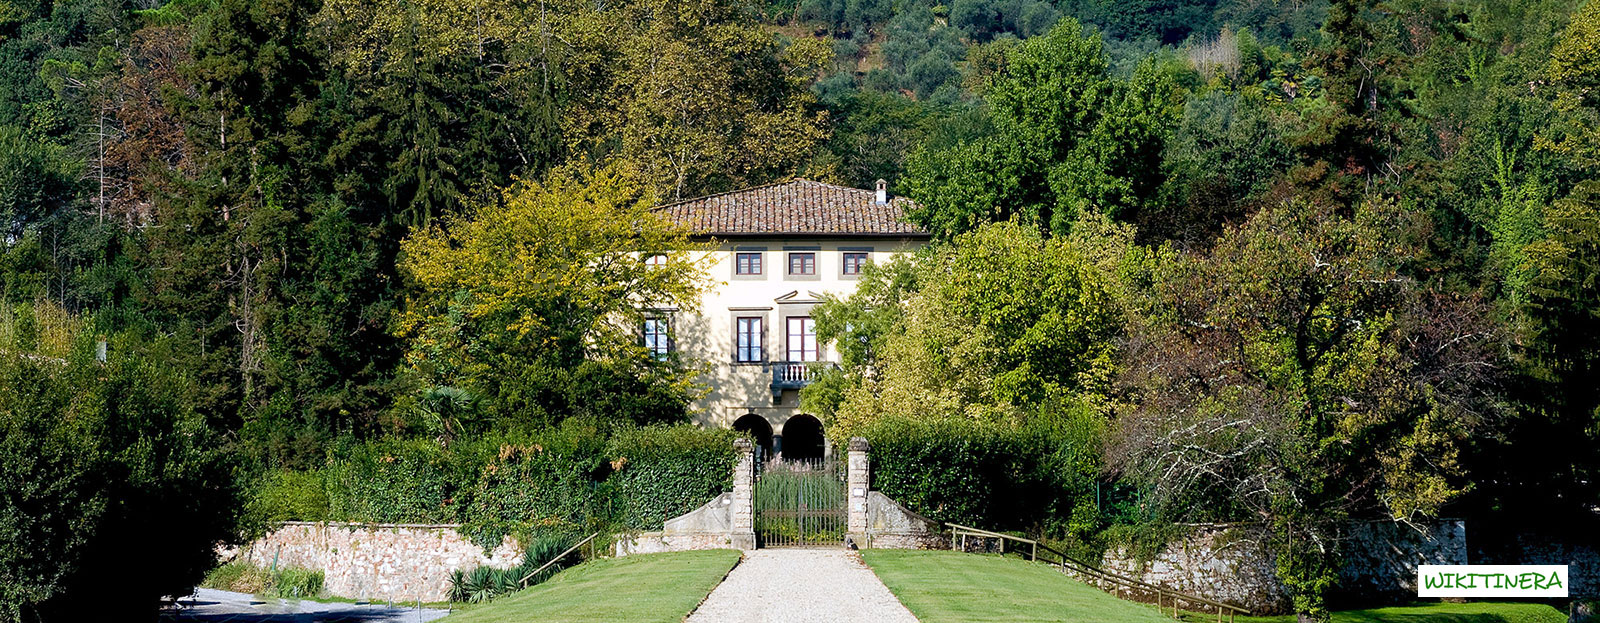 Villa Bernadini